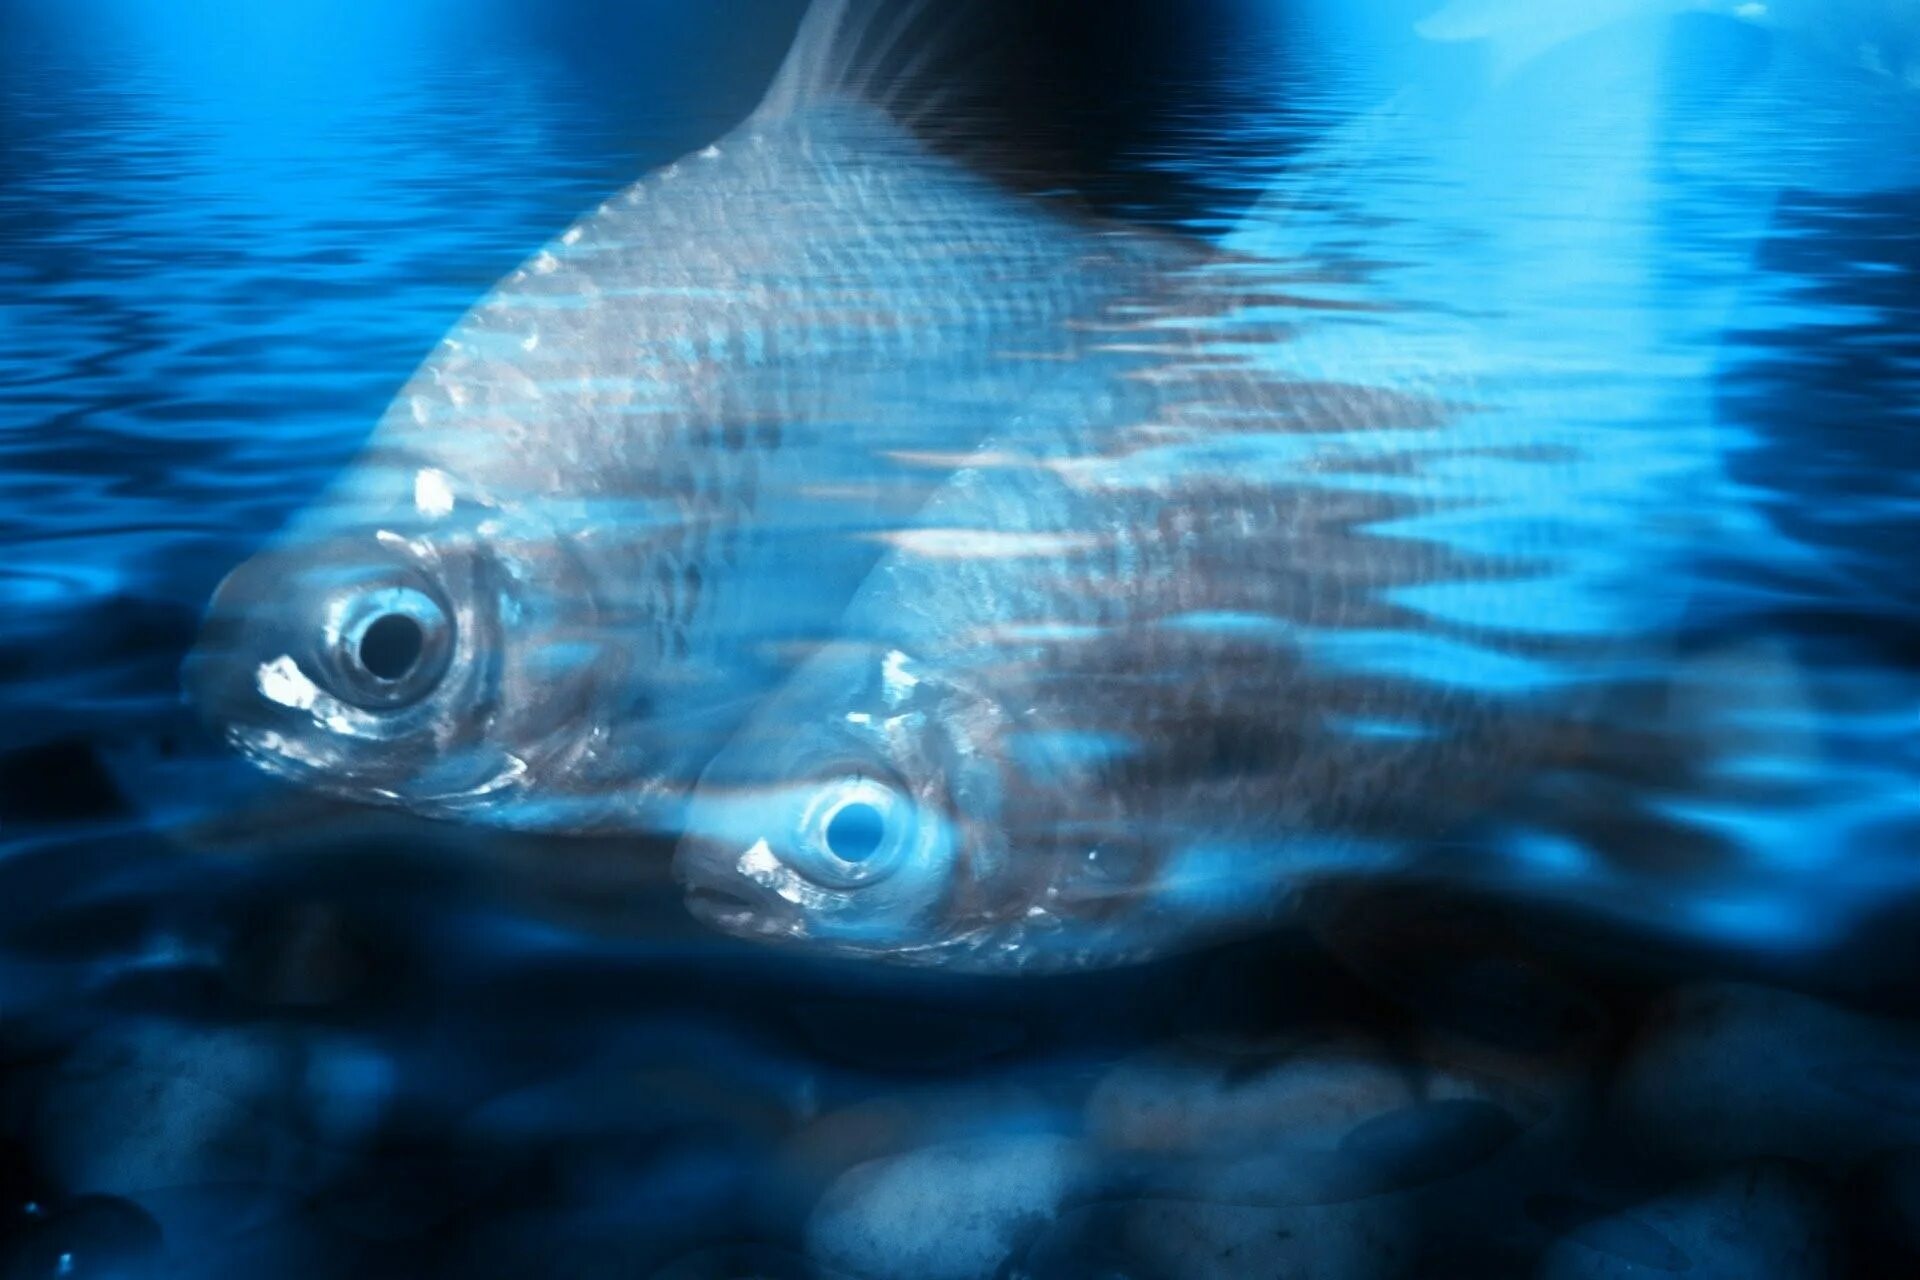 Рыба в воде. Фон вода с рыбой. Рыба плавает в воде. Рыба в голубой воде. Что находится в воде рыбы